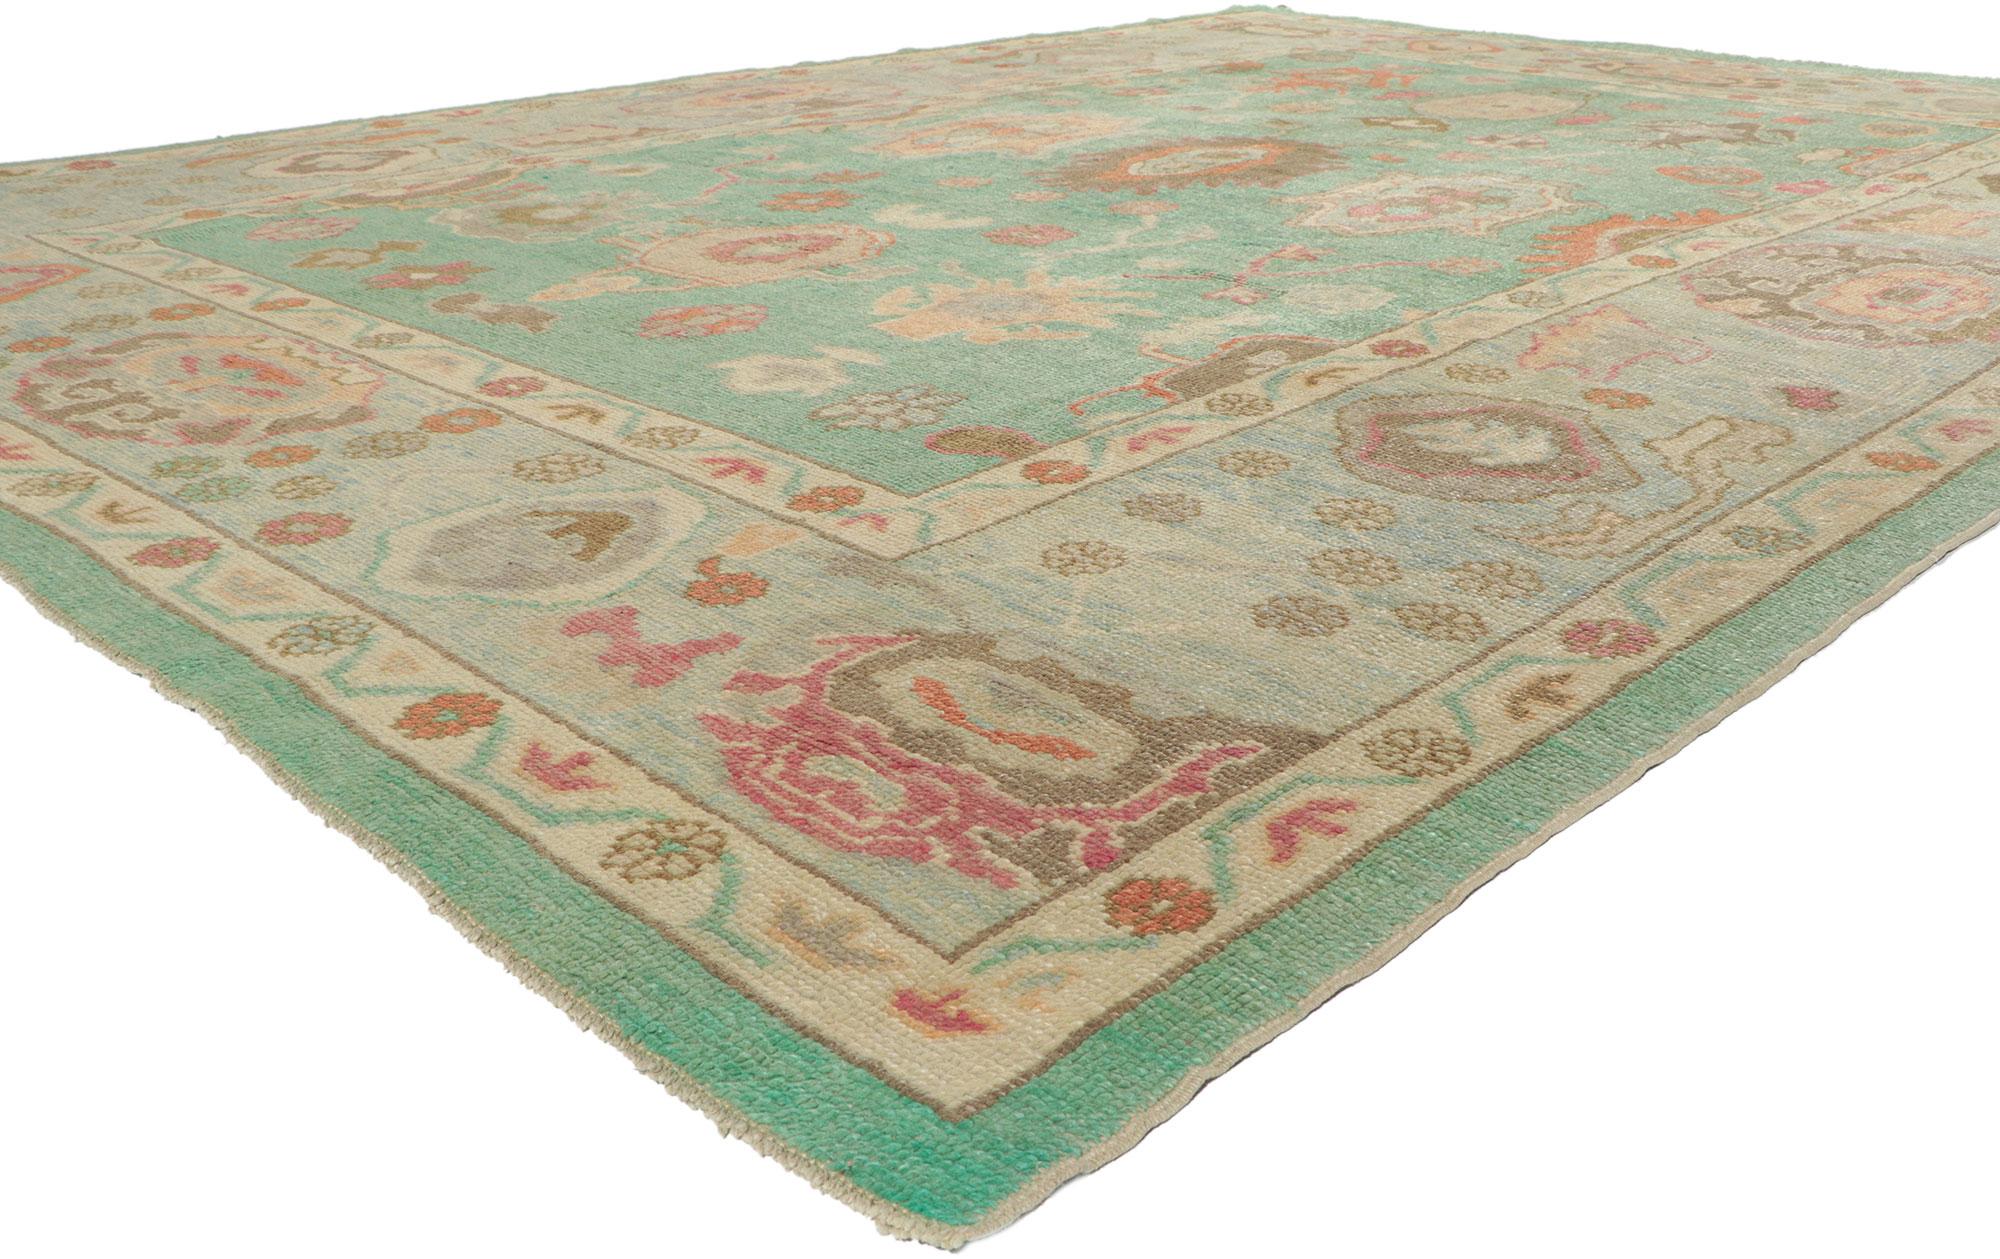 53808 Neuer türkischer Oushak-Teppich mit modernem Stil, 09'11 x 13'08. Dieser moderne türkische Oushak-Teppich aus handgeknüpfter Wolle ist elegant und verspielt und verkörpert einen modernen Stil. Das abgewetzte, grünliche Feld zeigt eine Reihe